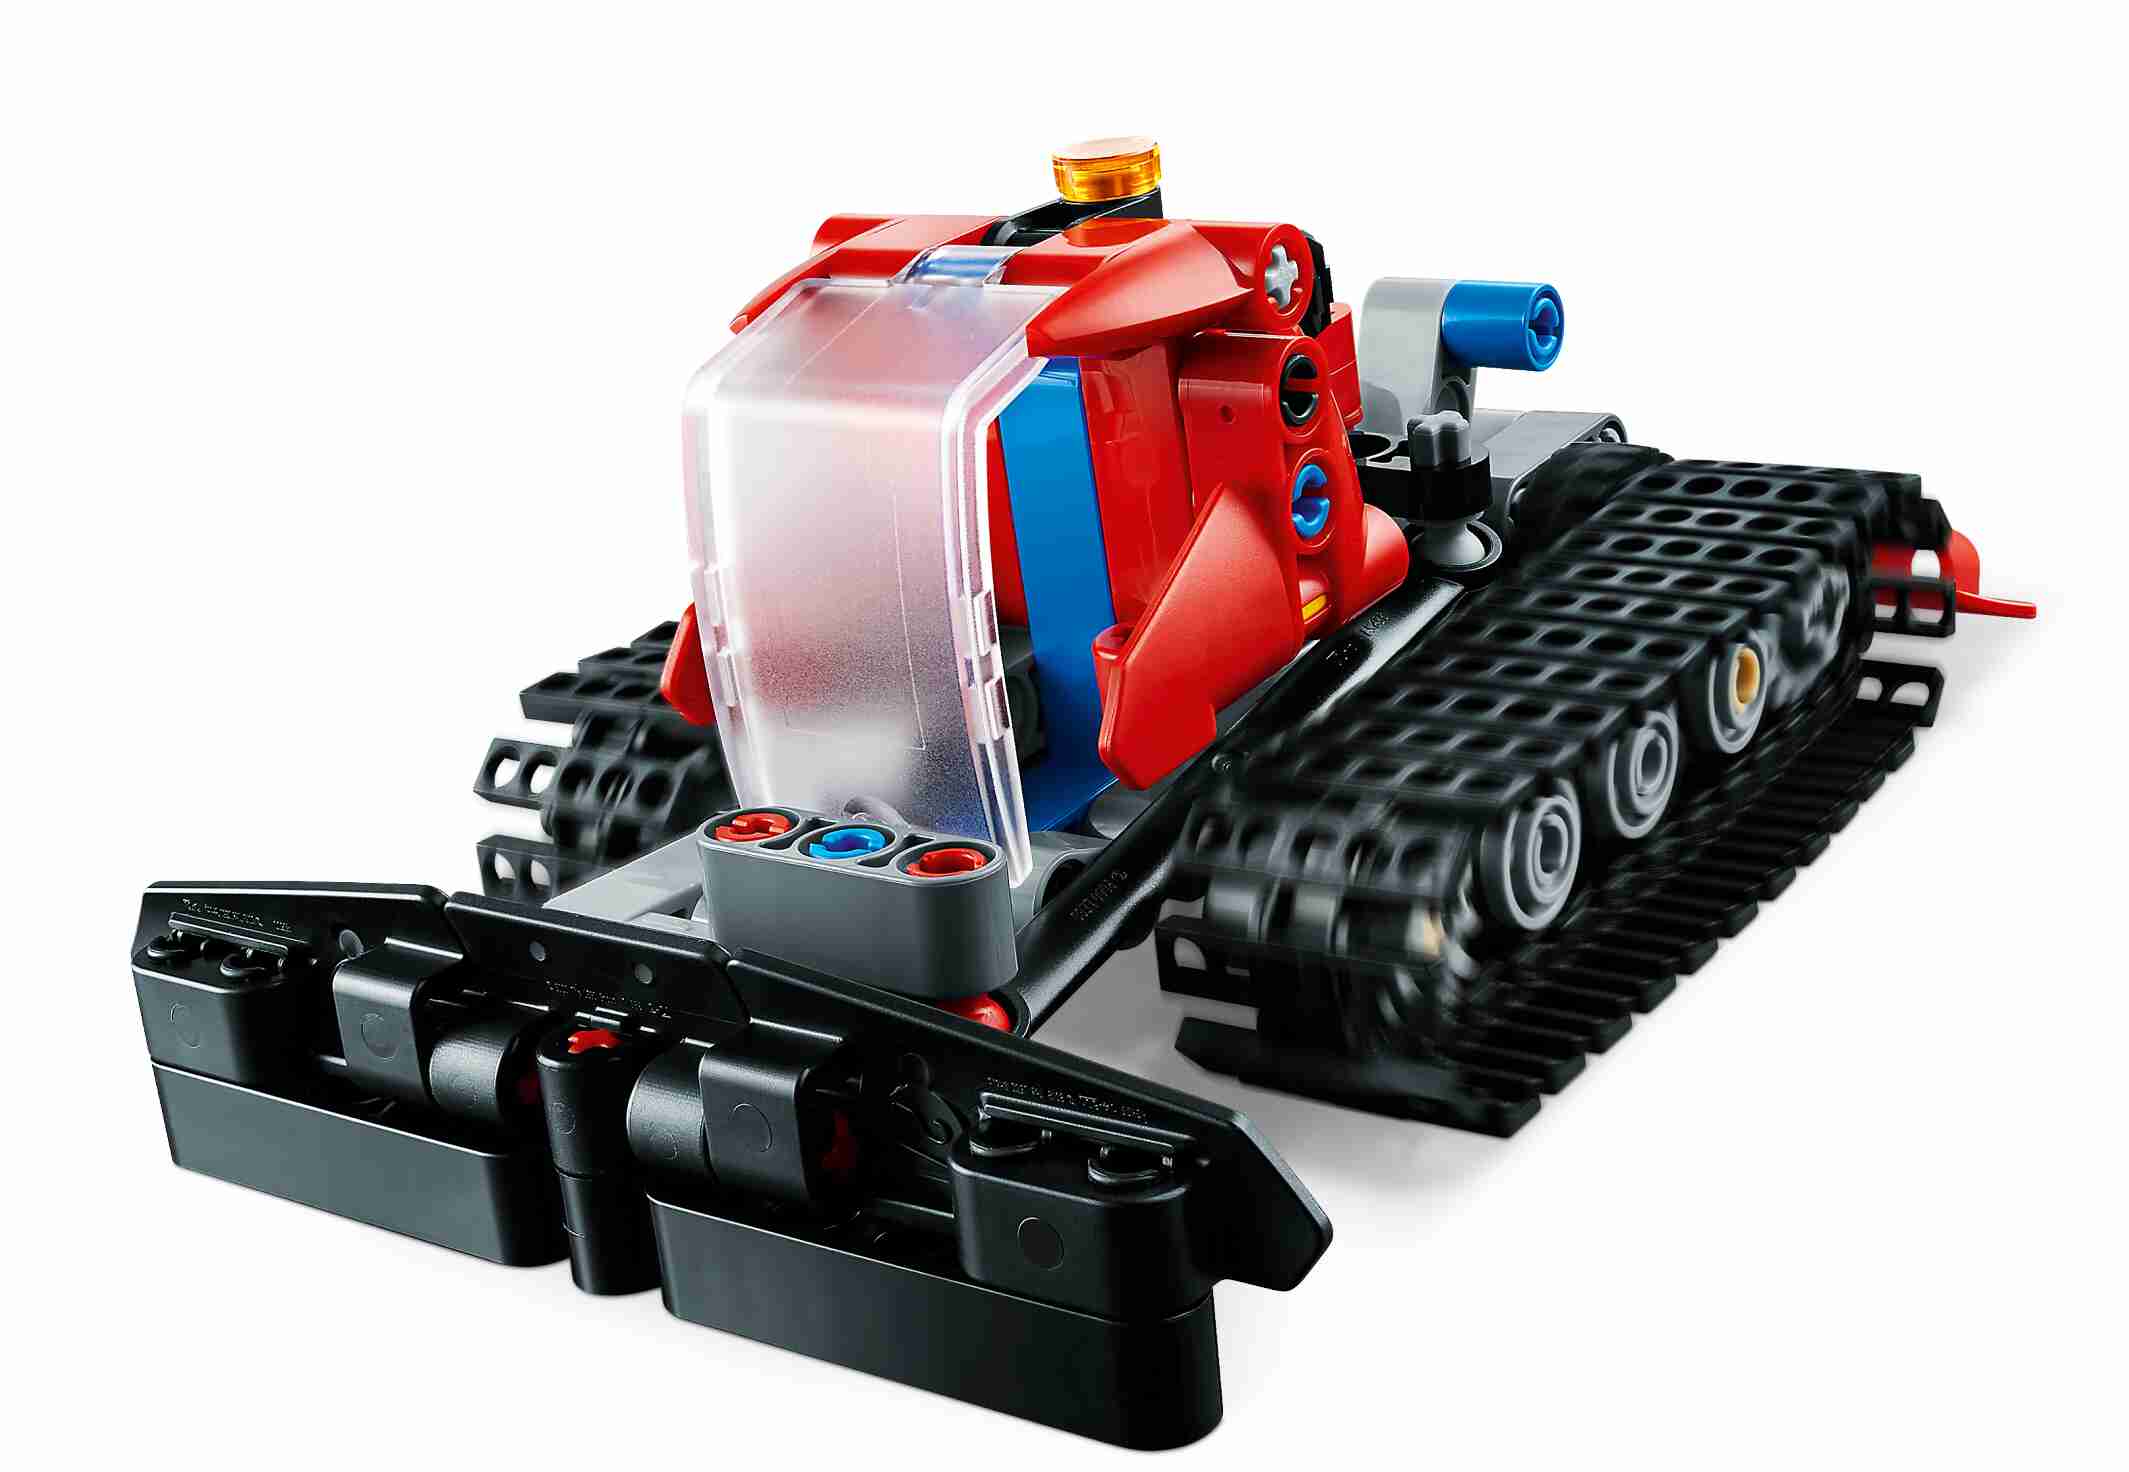 LEGO 42148 Technic Pistenraupe, 2-in-1-Modell, Gummireifen und Gummiketten